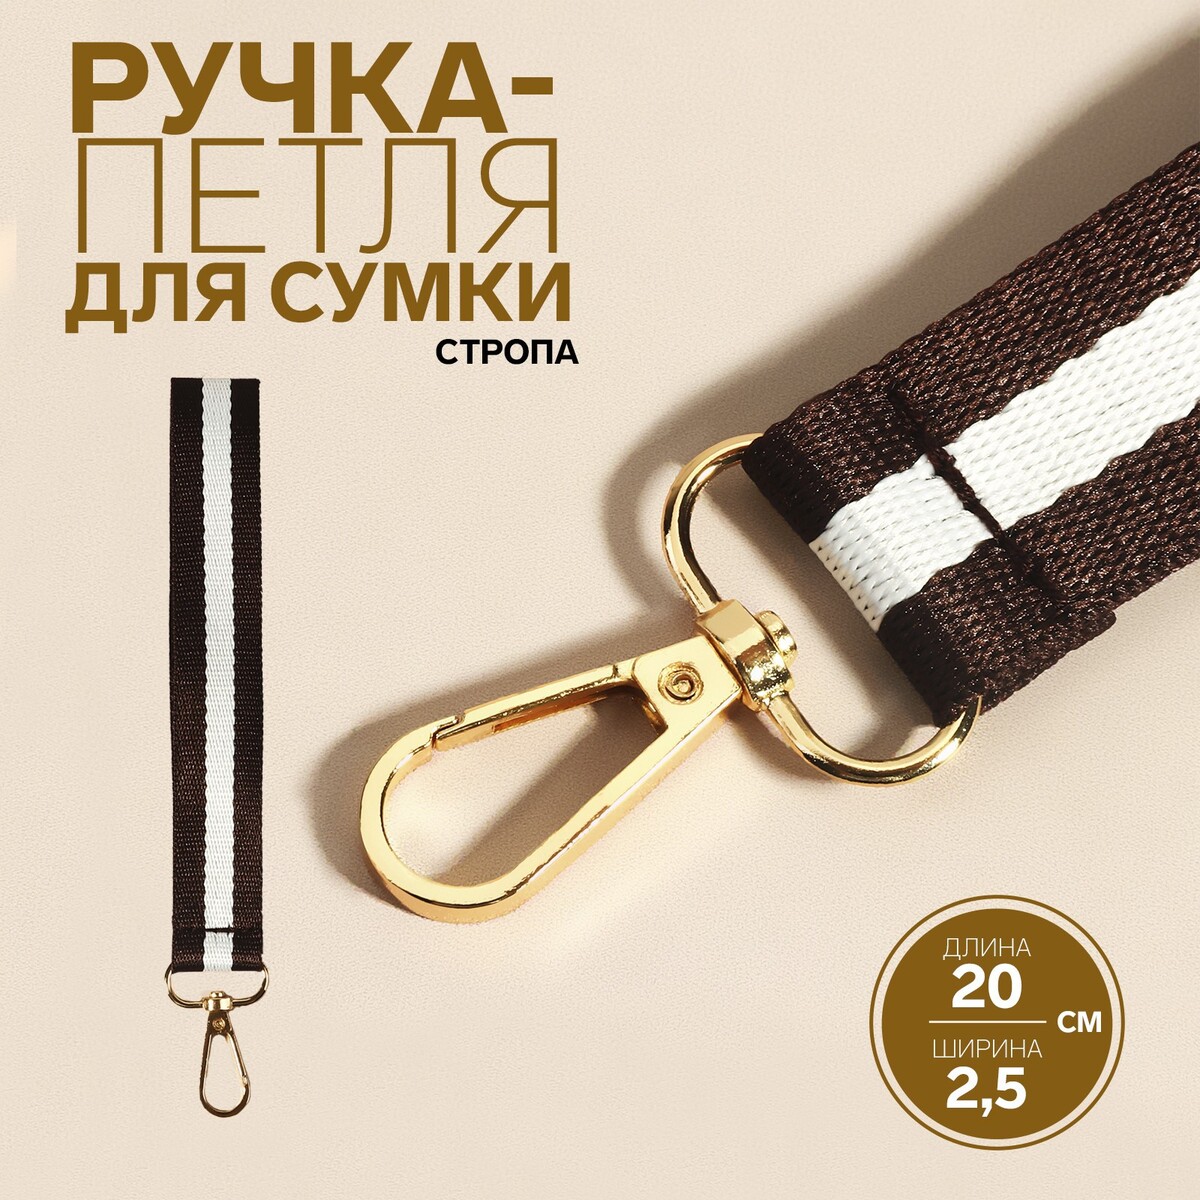 Ручка-петля для сумки, стропа, 20 × 2,5 см, цвет коричневый/белый ручка рейлинг cappio м о 96 мм коричневый